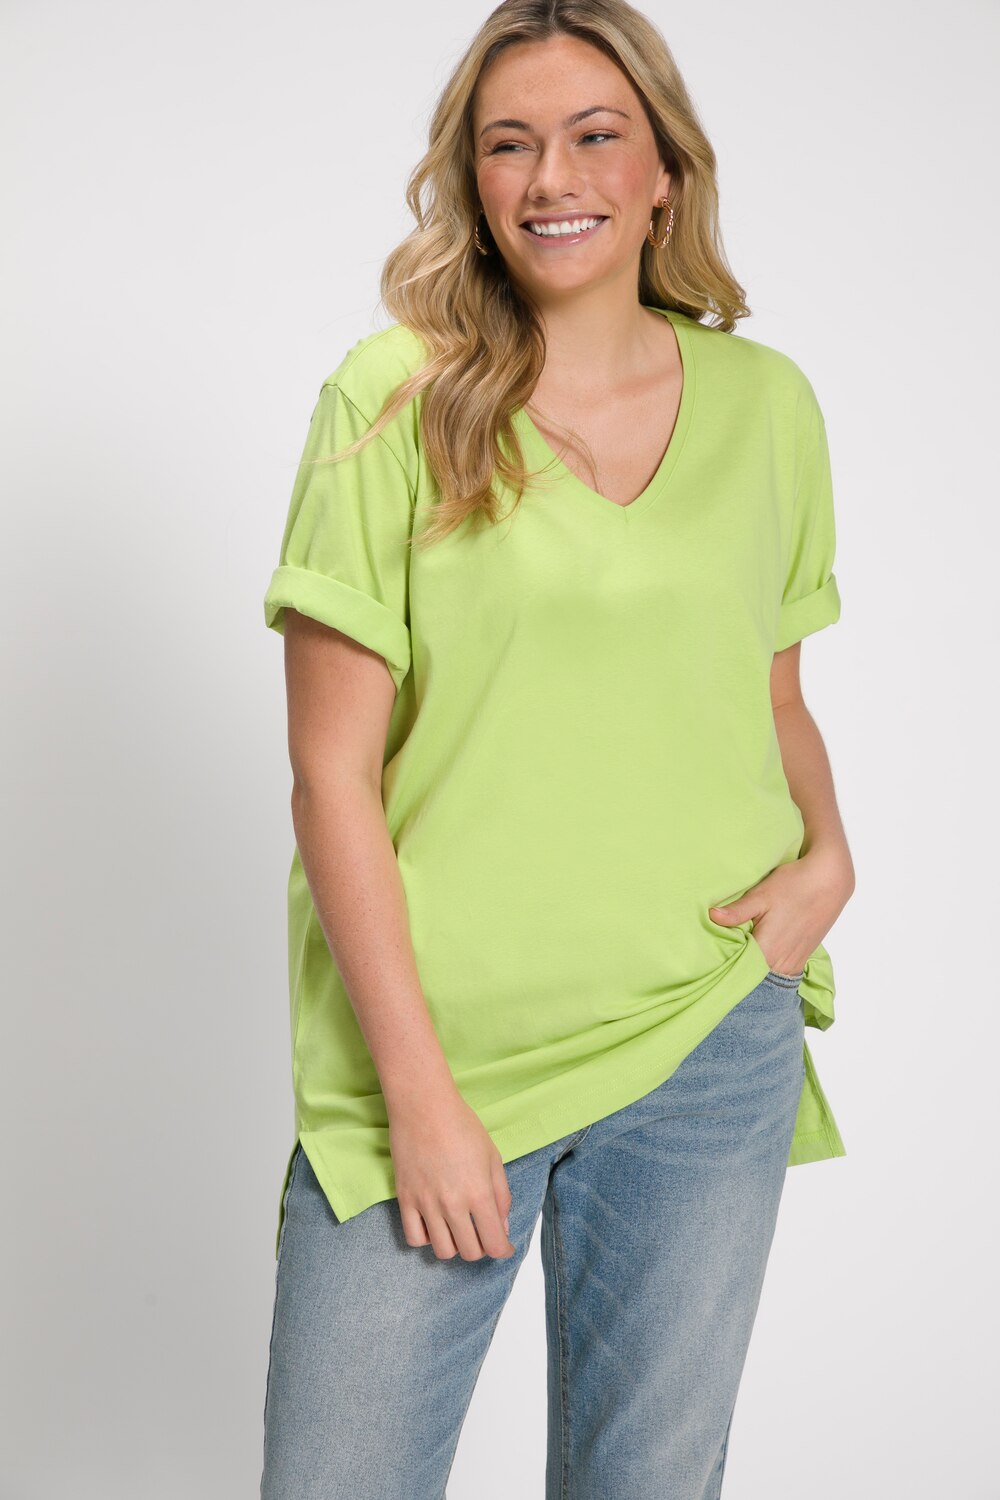 Grote Maten T-shirt, Dames, groen, Maat: 42/44, Ulla Popken